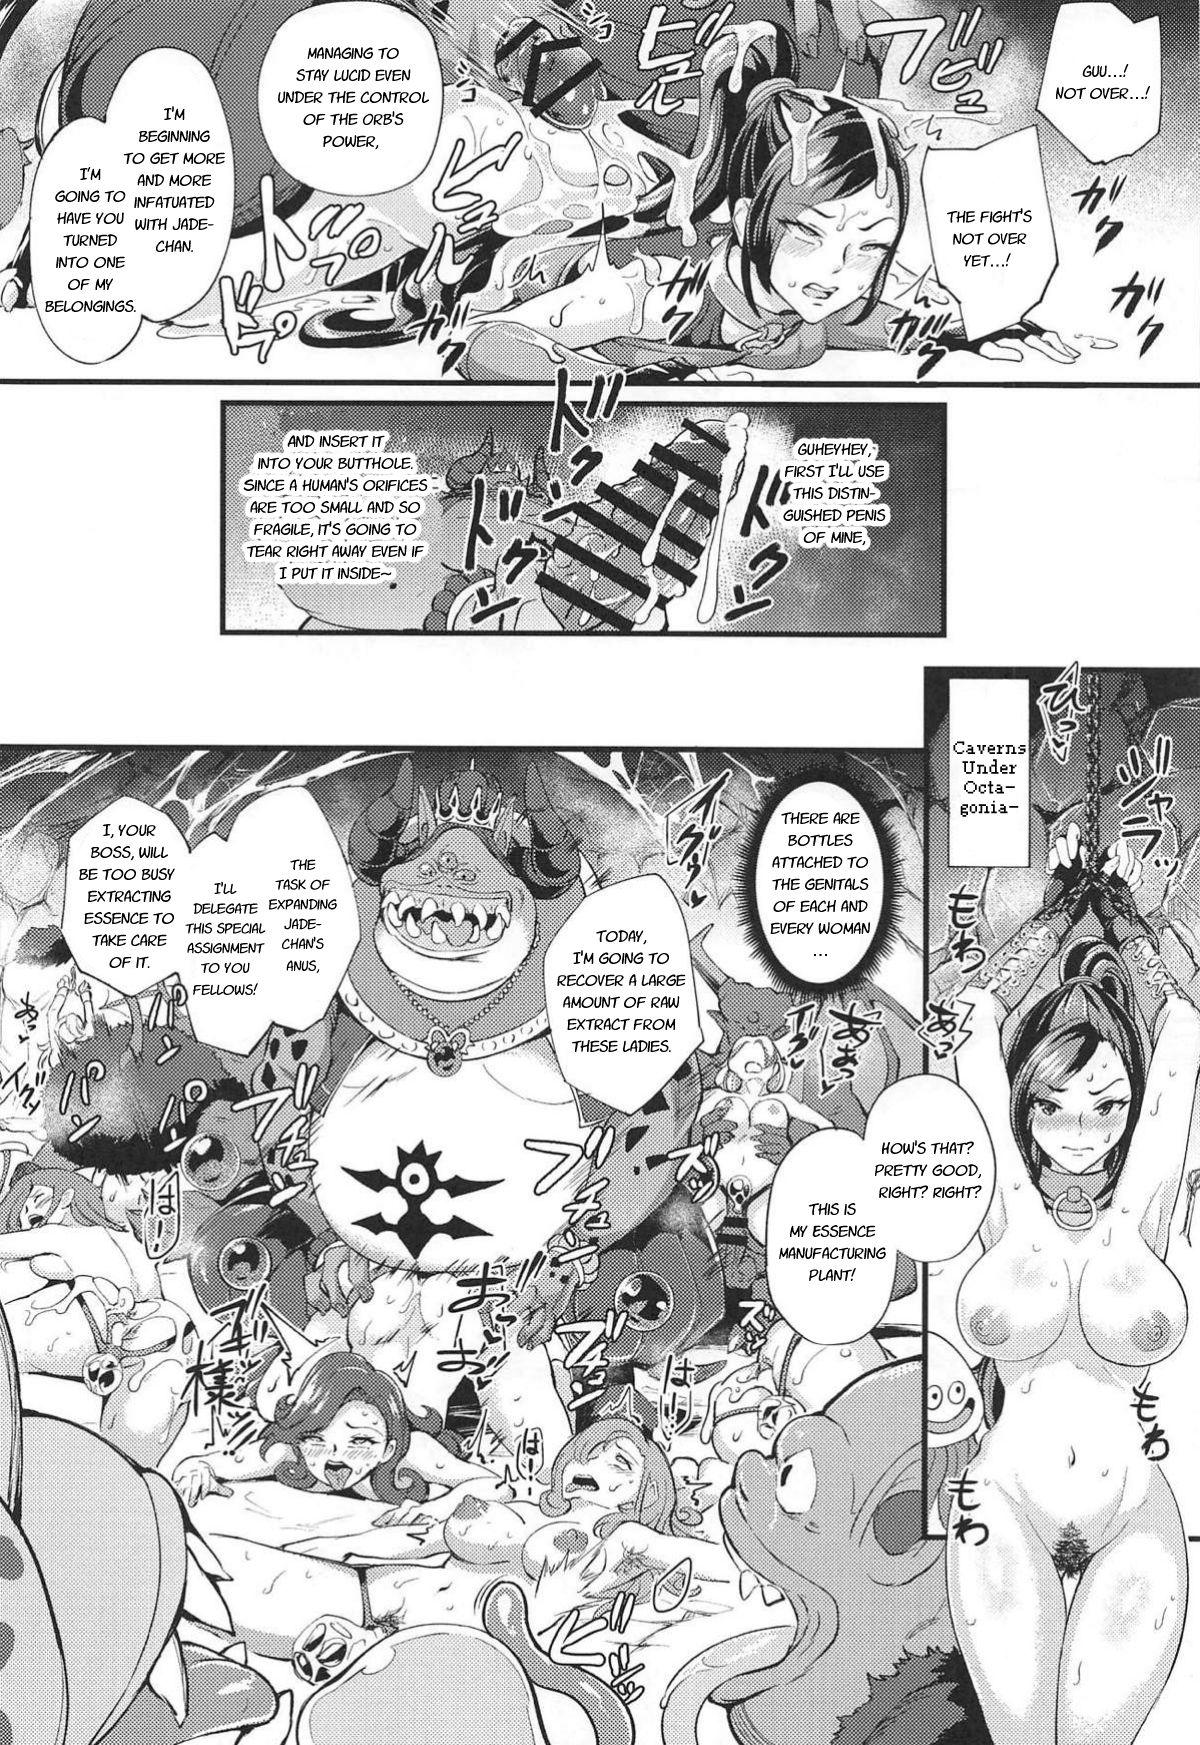 Foreplay Martina ga Youmagunou no Ketsuana Nikubenki ni Ochiru made - Dragon quest xi Filipina - Page 7